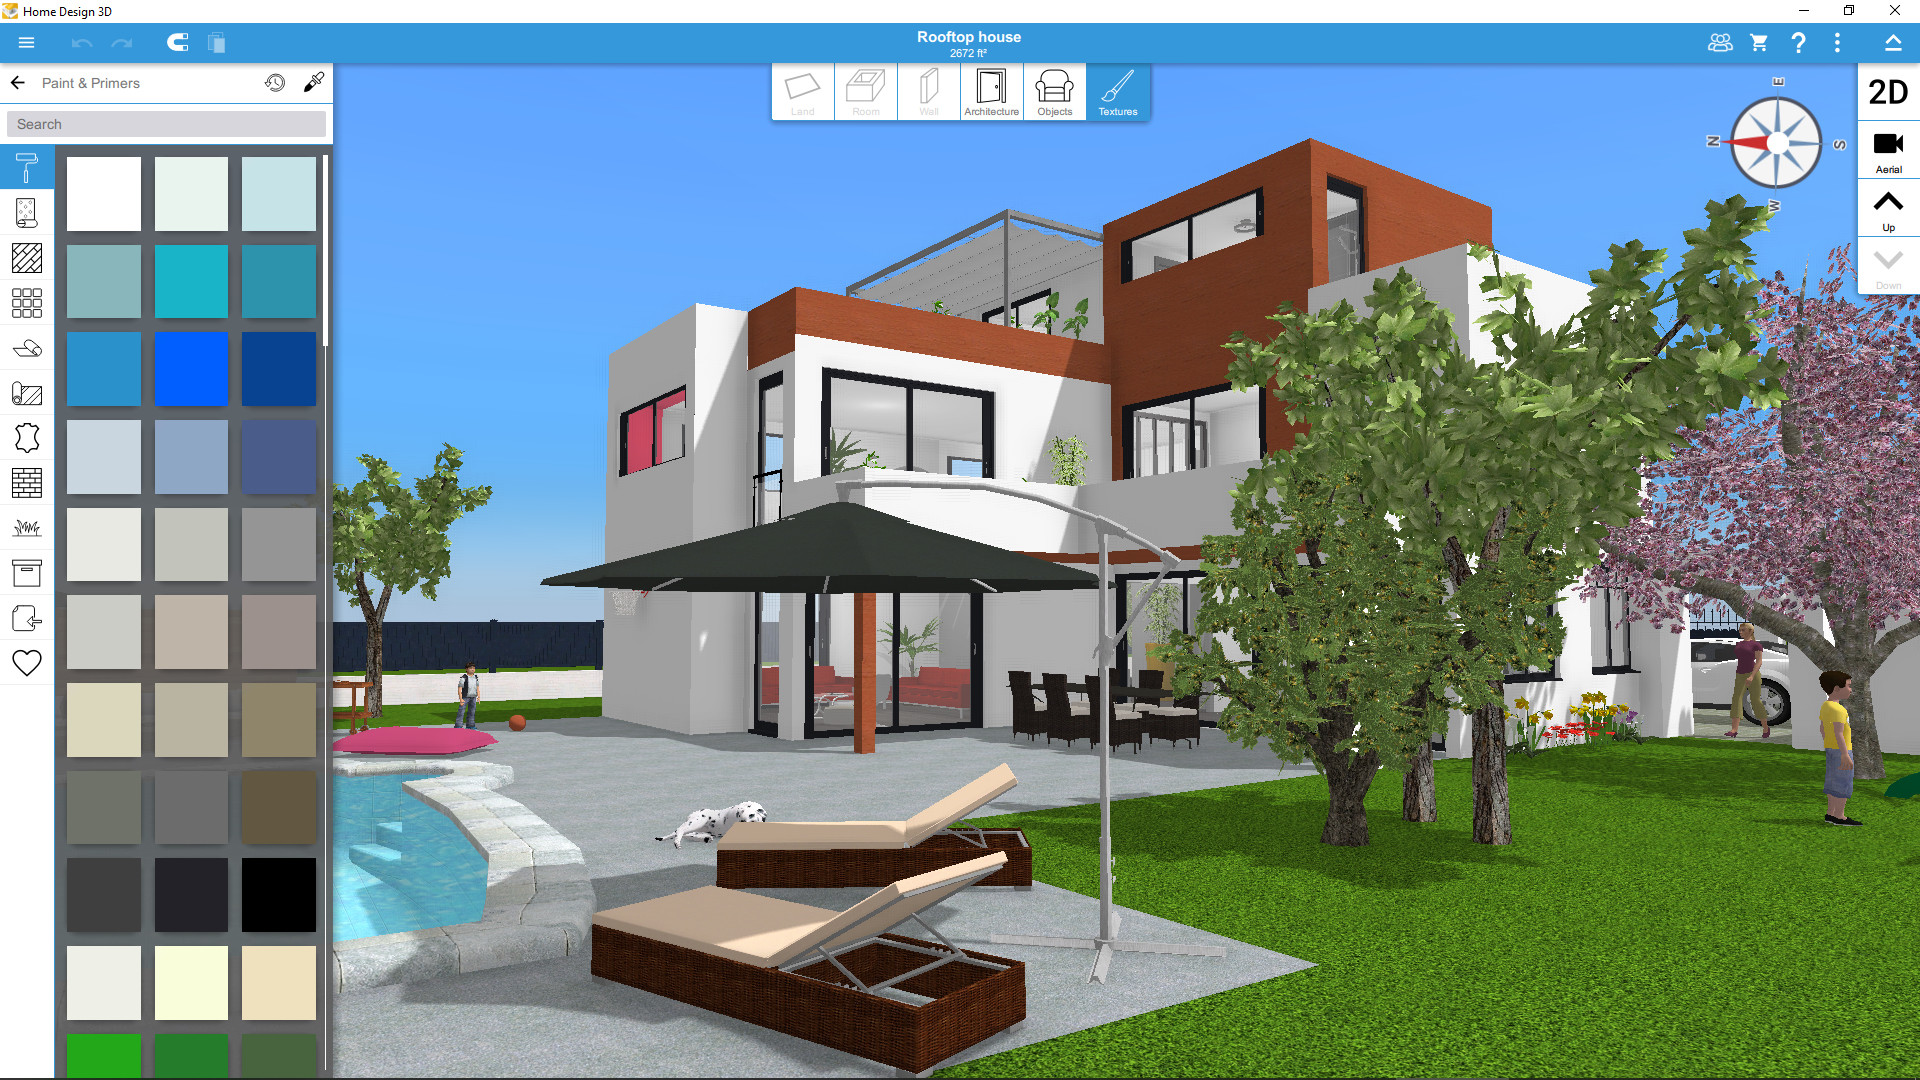 Home Design 3D screenshot